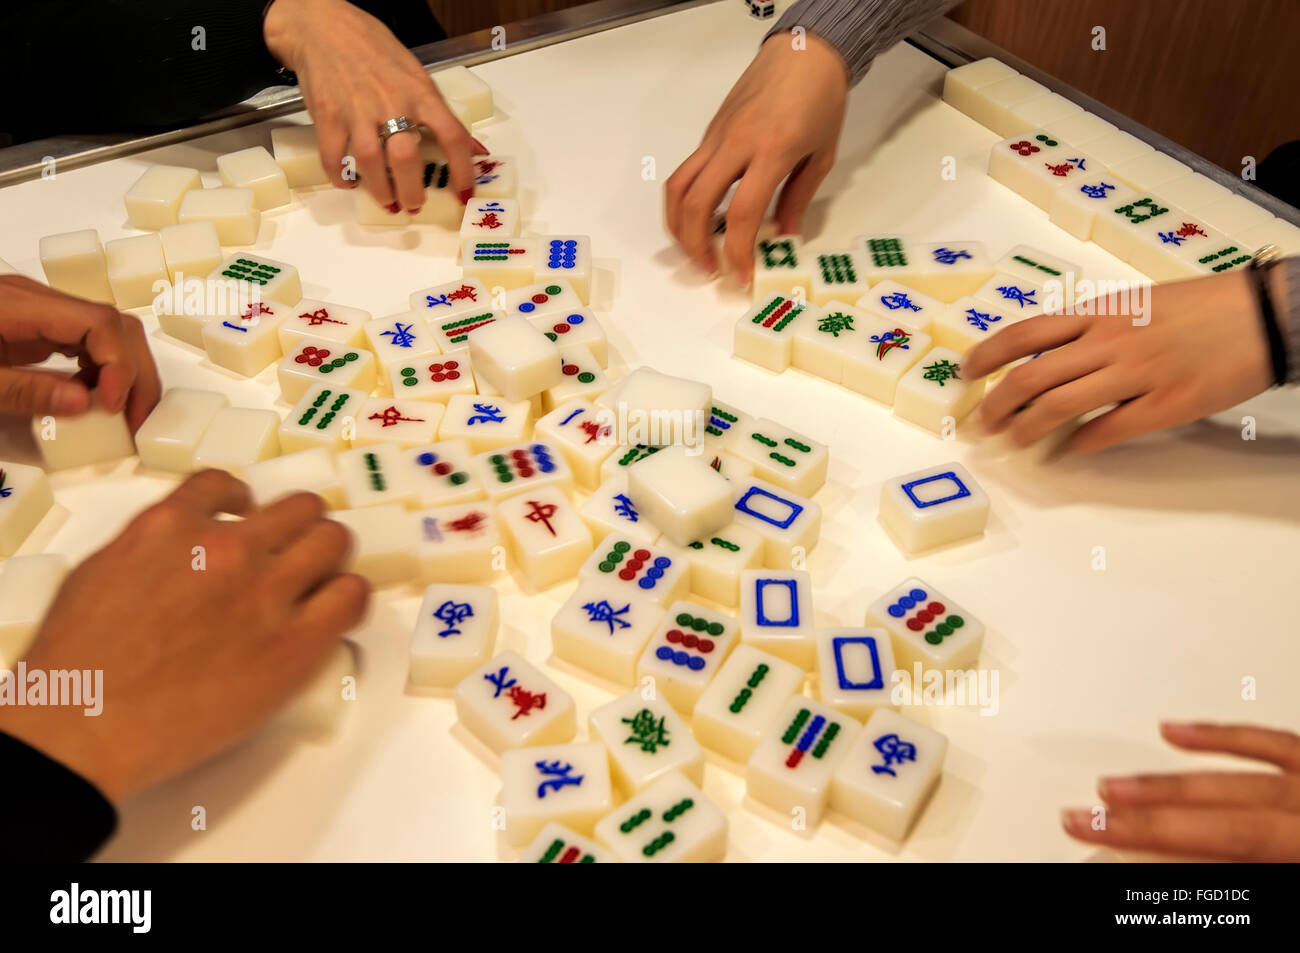 People playing Mahjong, Hong Kong, China. Stock Photo